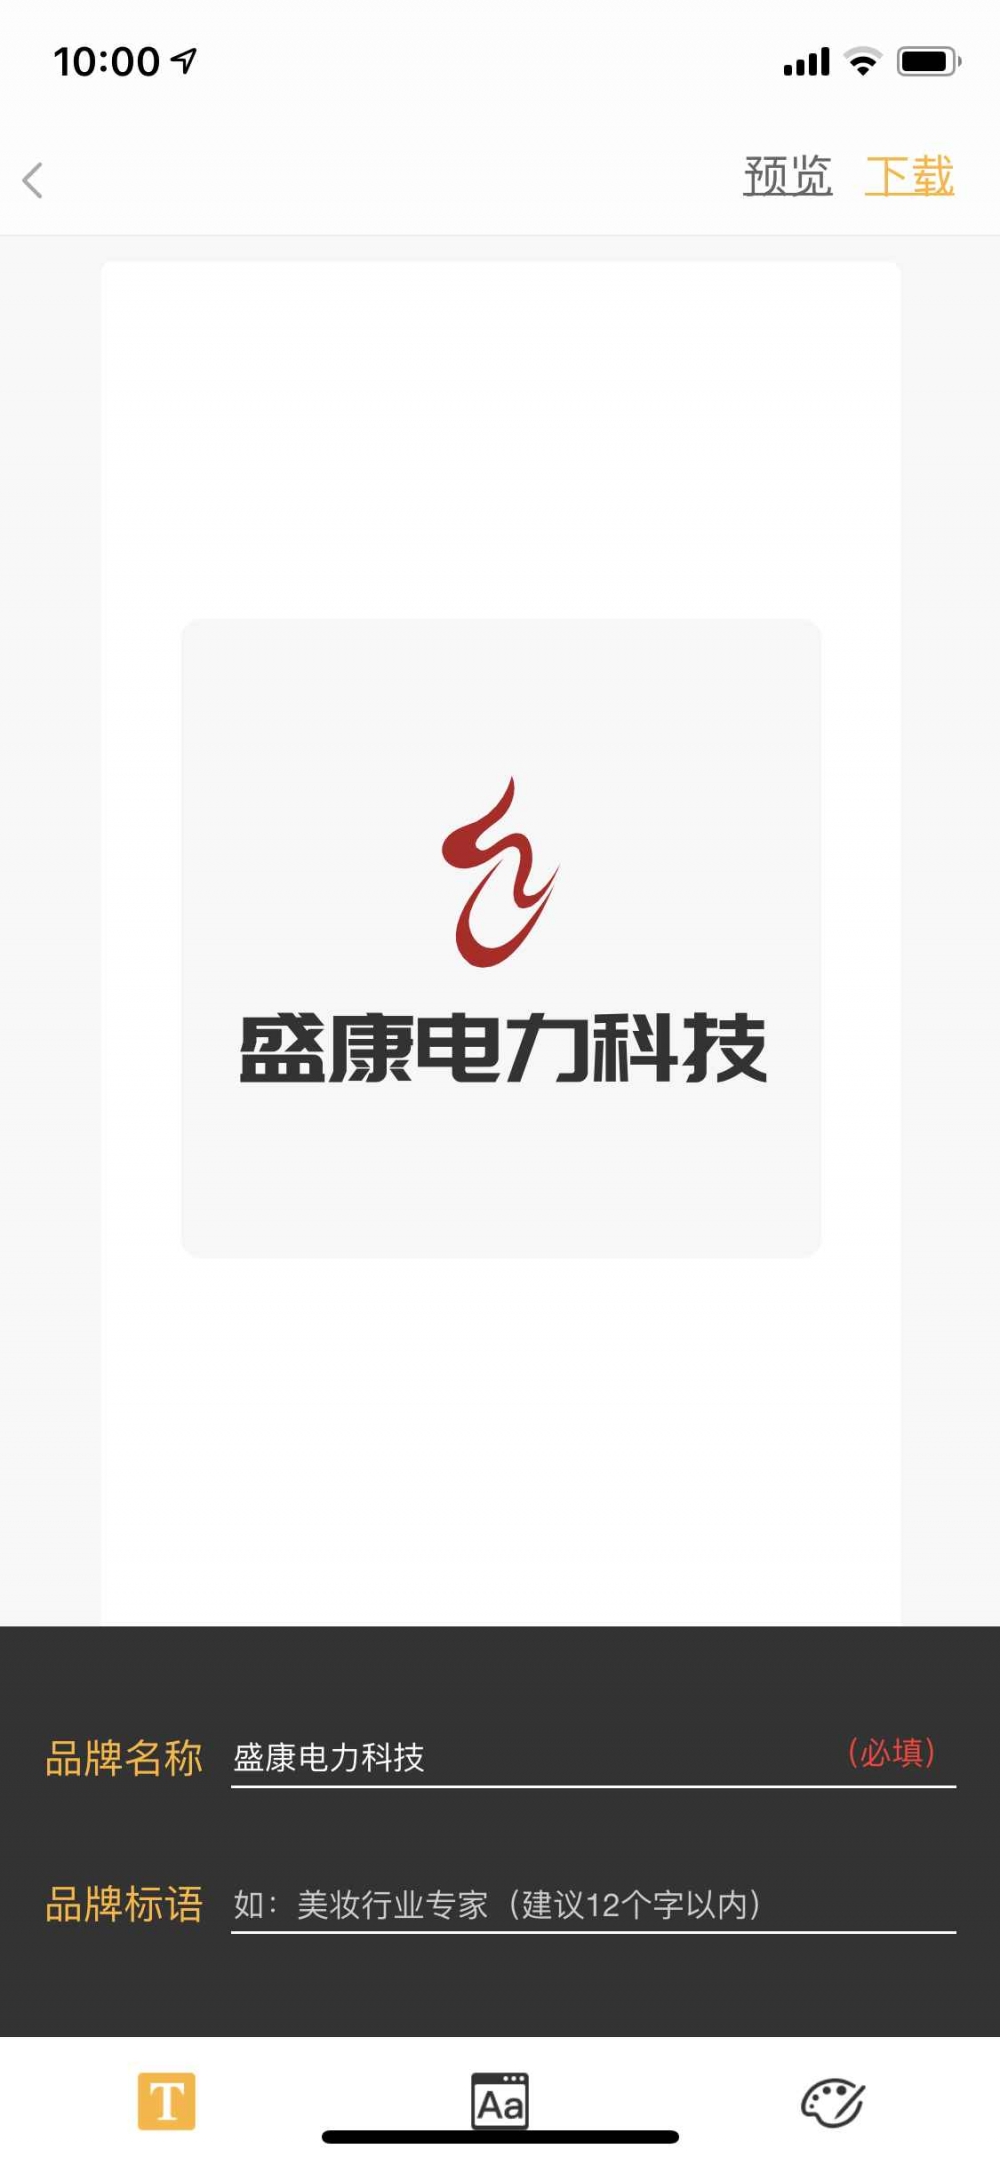 杭州盛康电力科技有限公司